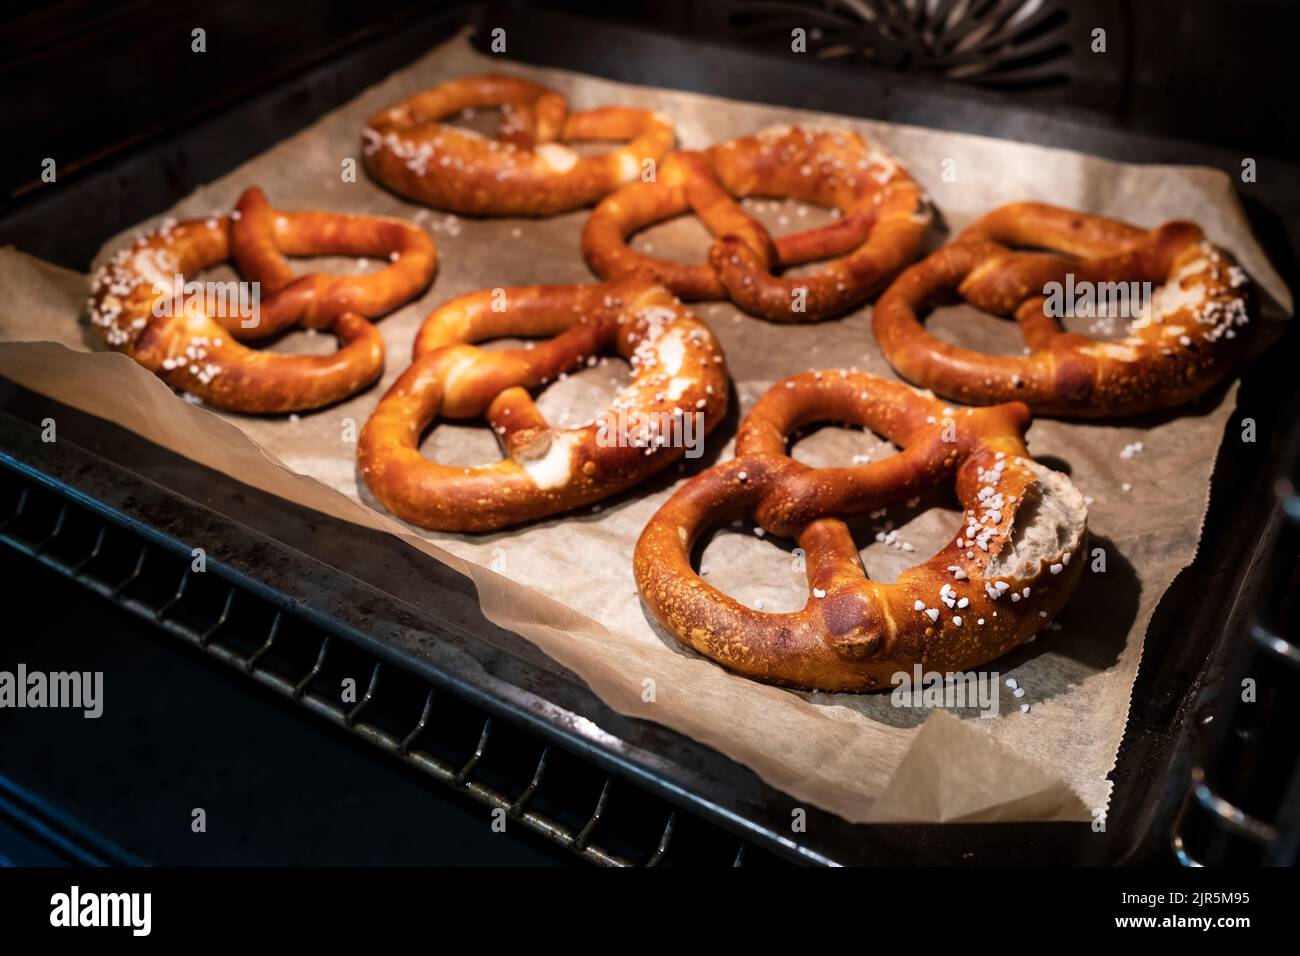 Les bretzels cuits avec ajout de gros sel reposent sur une plaque de cuisson dans le four. Cuisine allemande traditionnelle. Oktoberfest. Banque D'Images